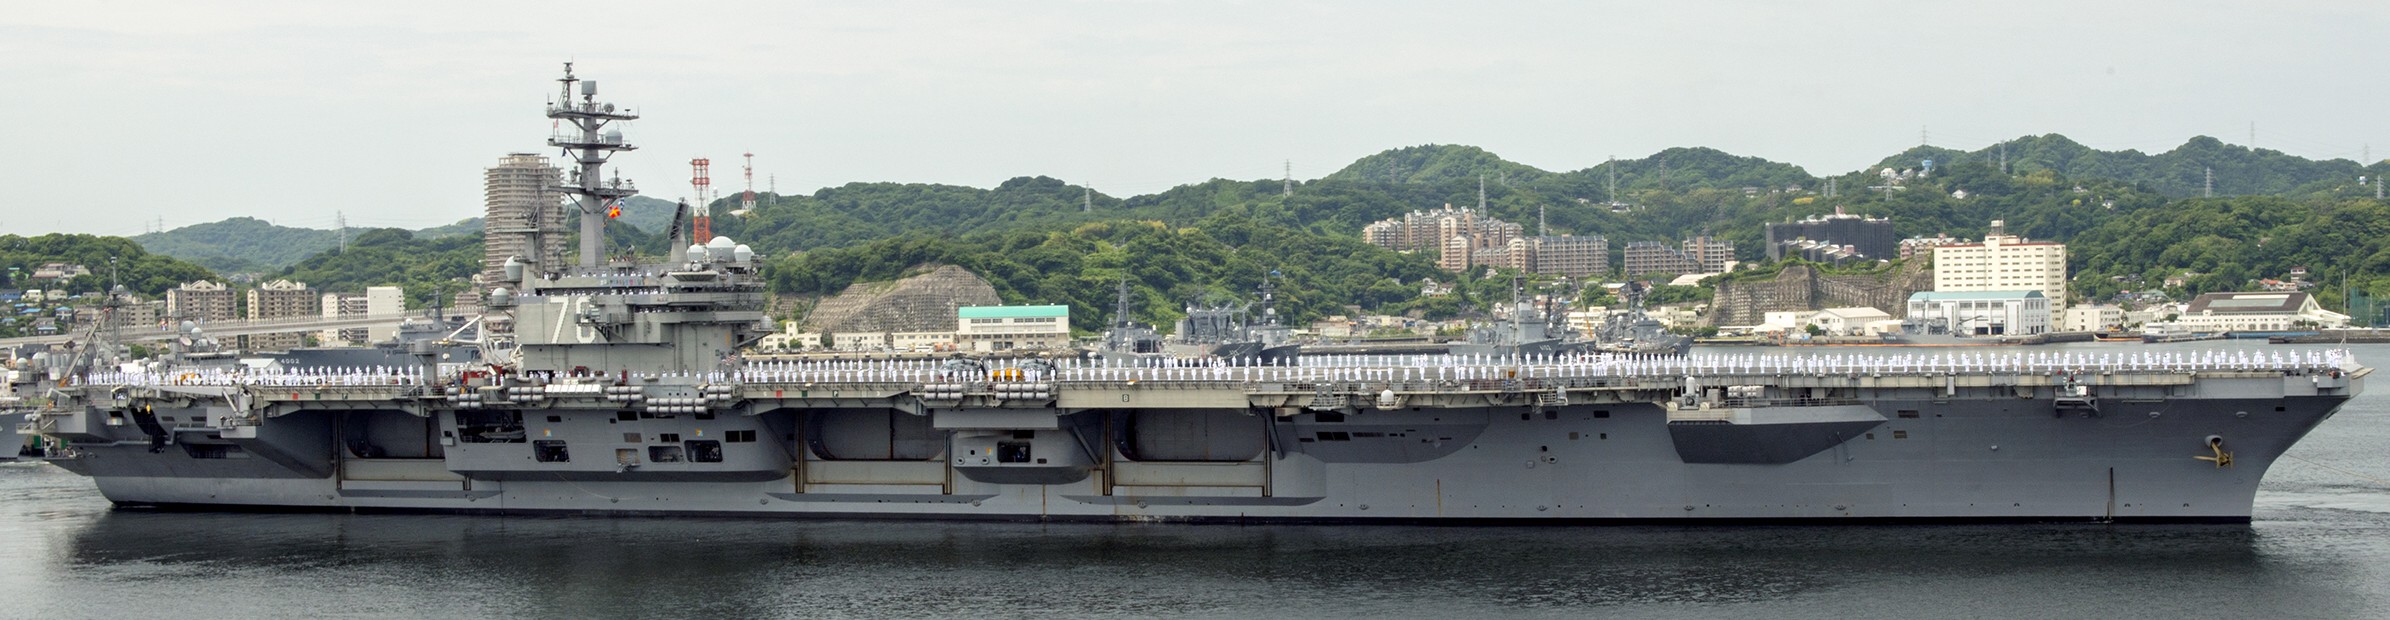 cvn-76 uss ronald reagan nimitz class aircraft carrier departing yokosuka 109